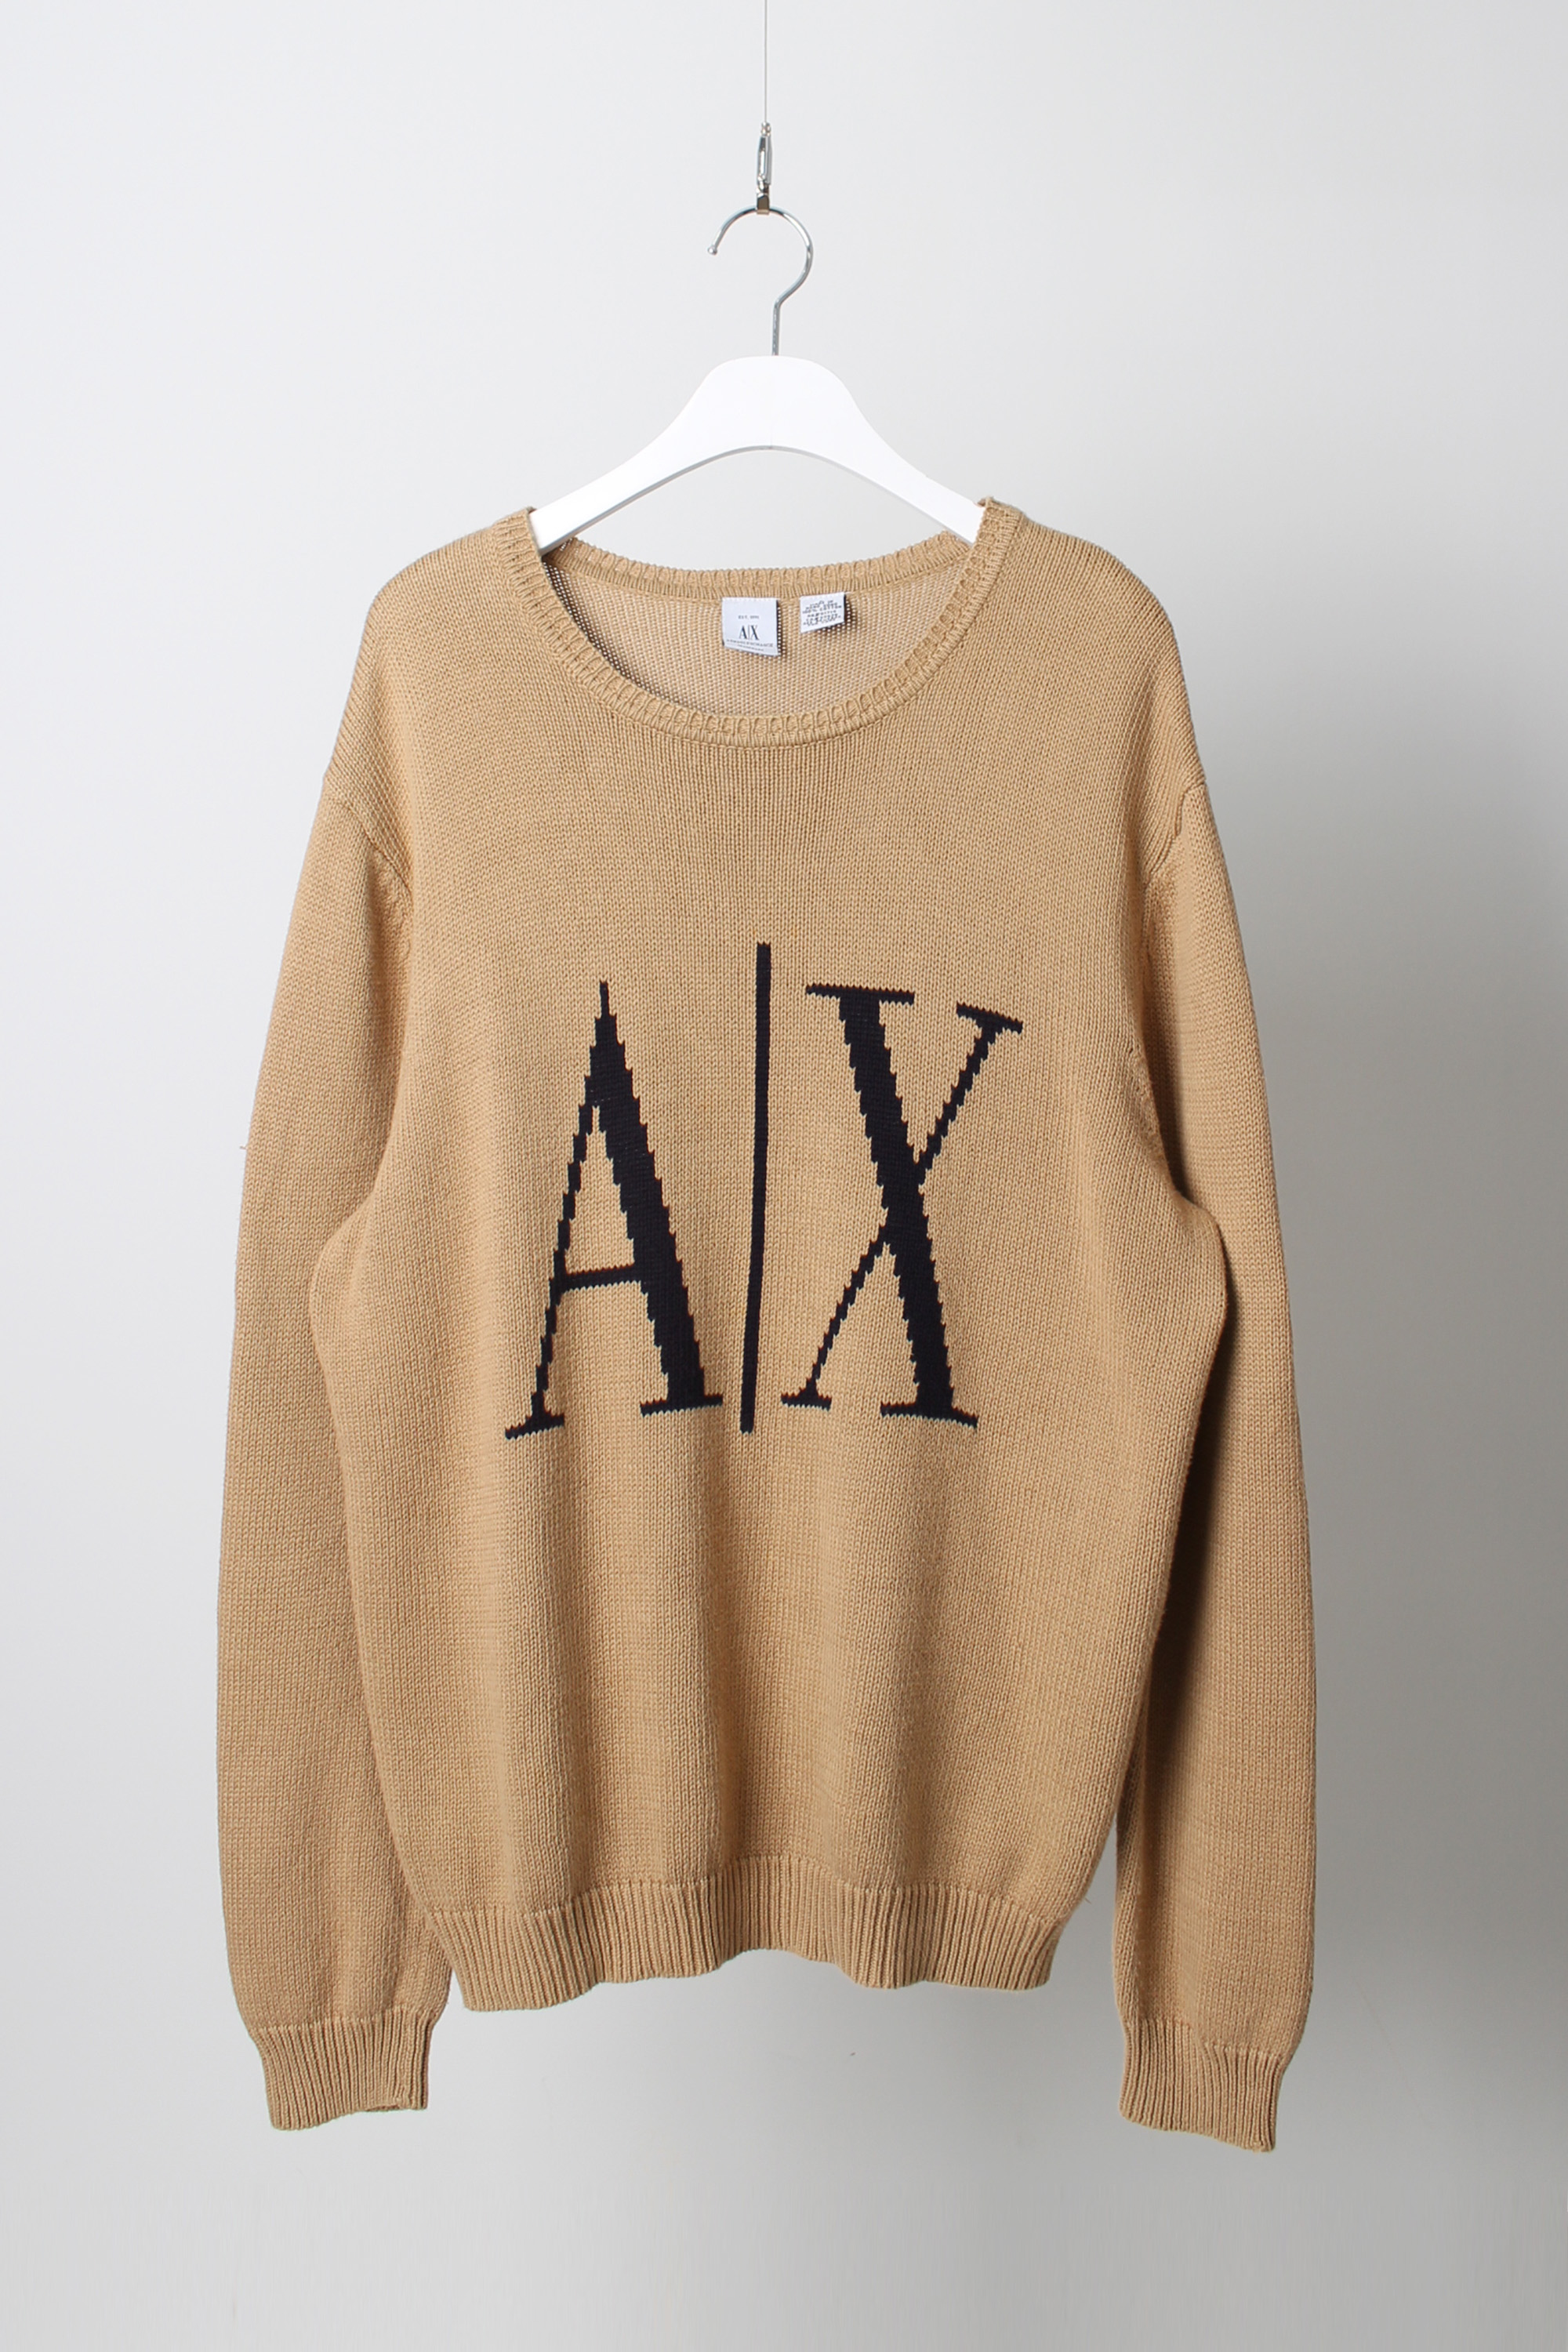 A|X Armani Exchange knit